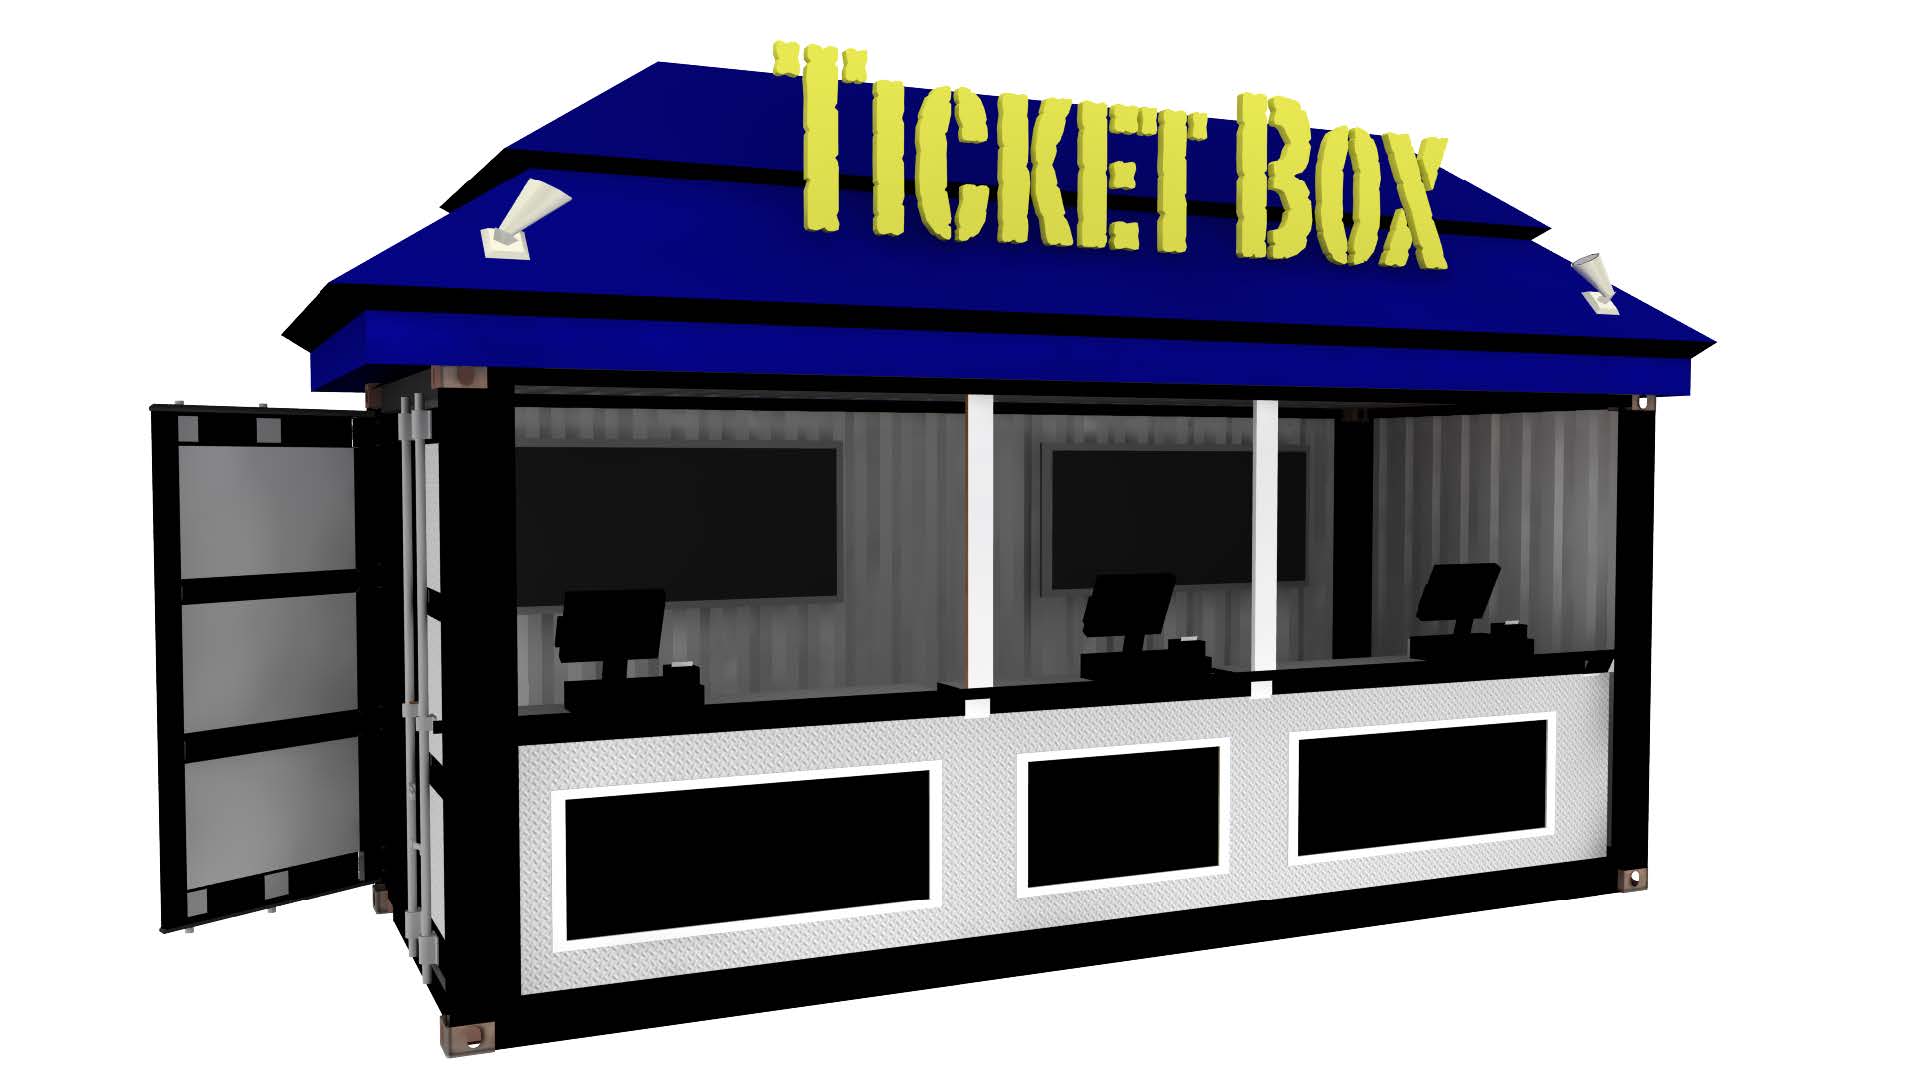 Тикет бокс. Ticket Box. Event container